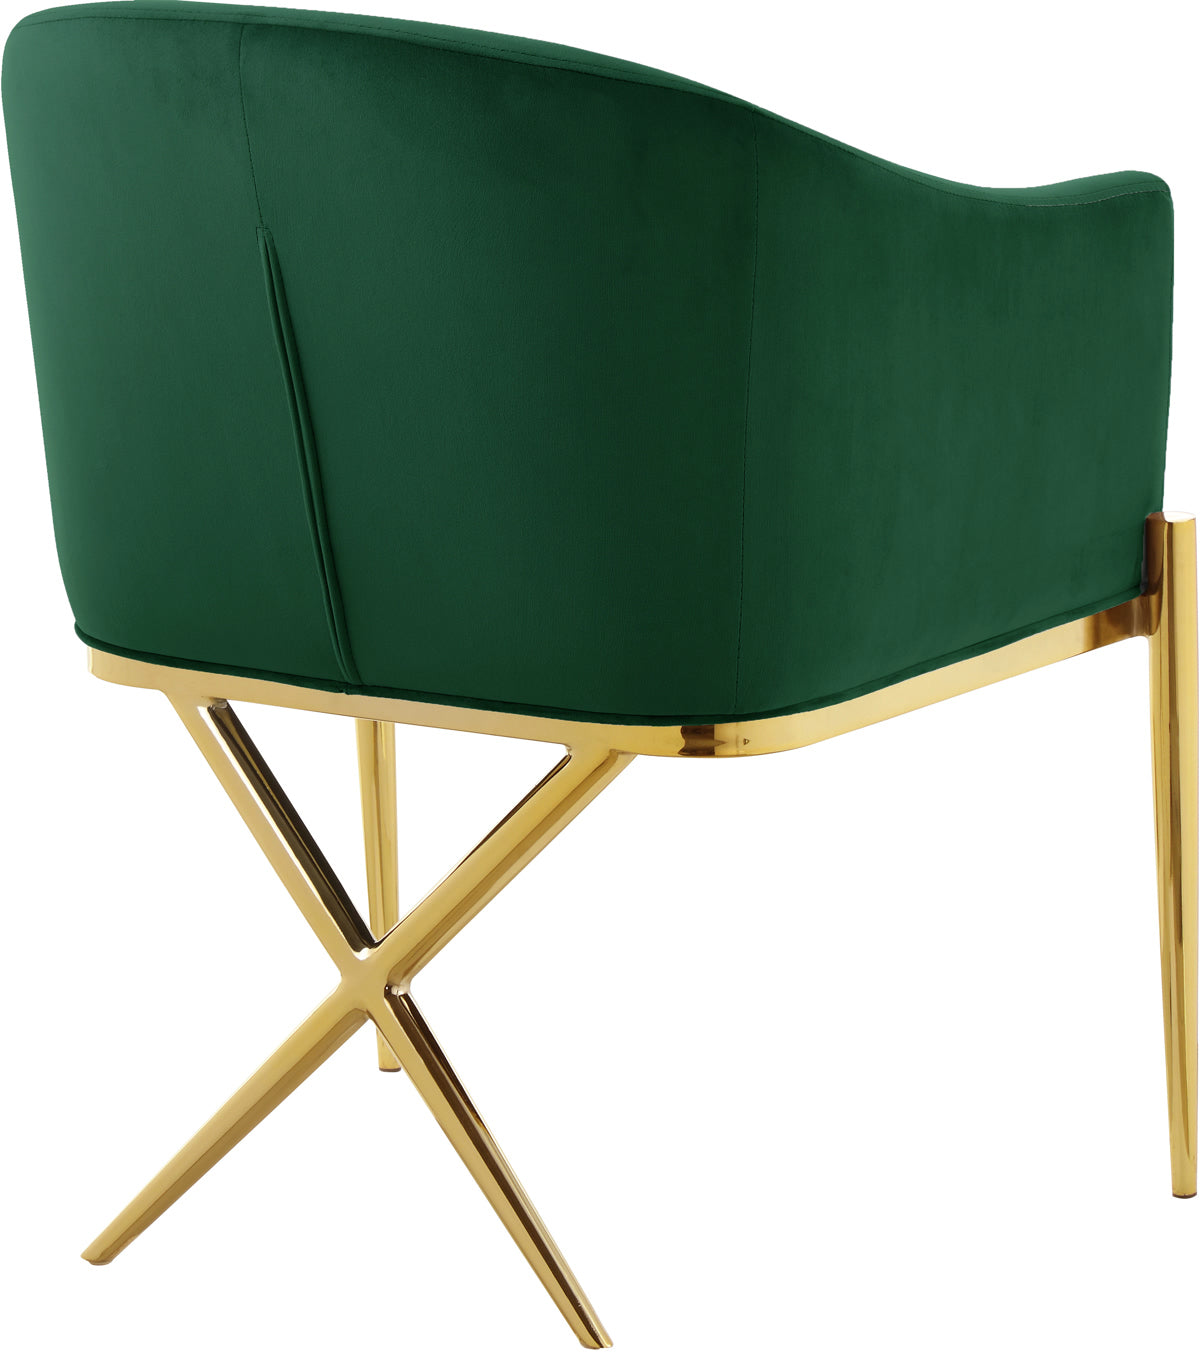 Meridian Furniture Xavier Grey Velvet Dining Chair